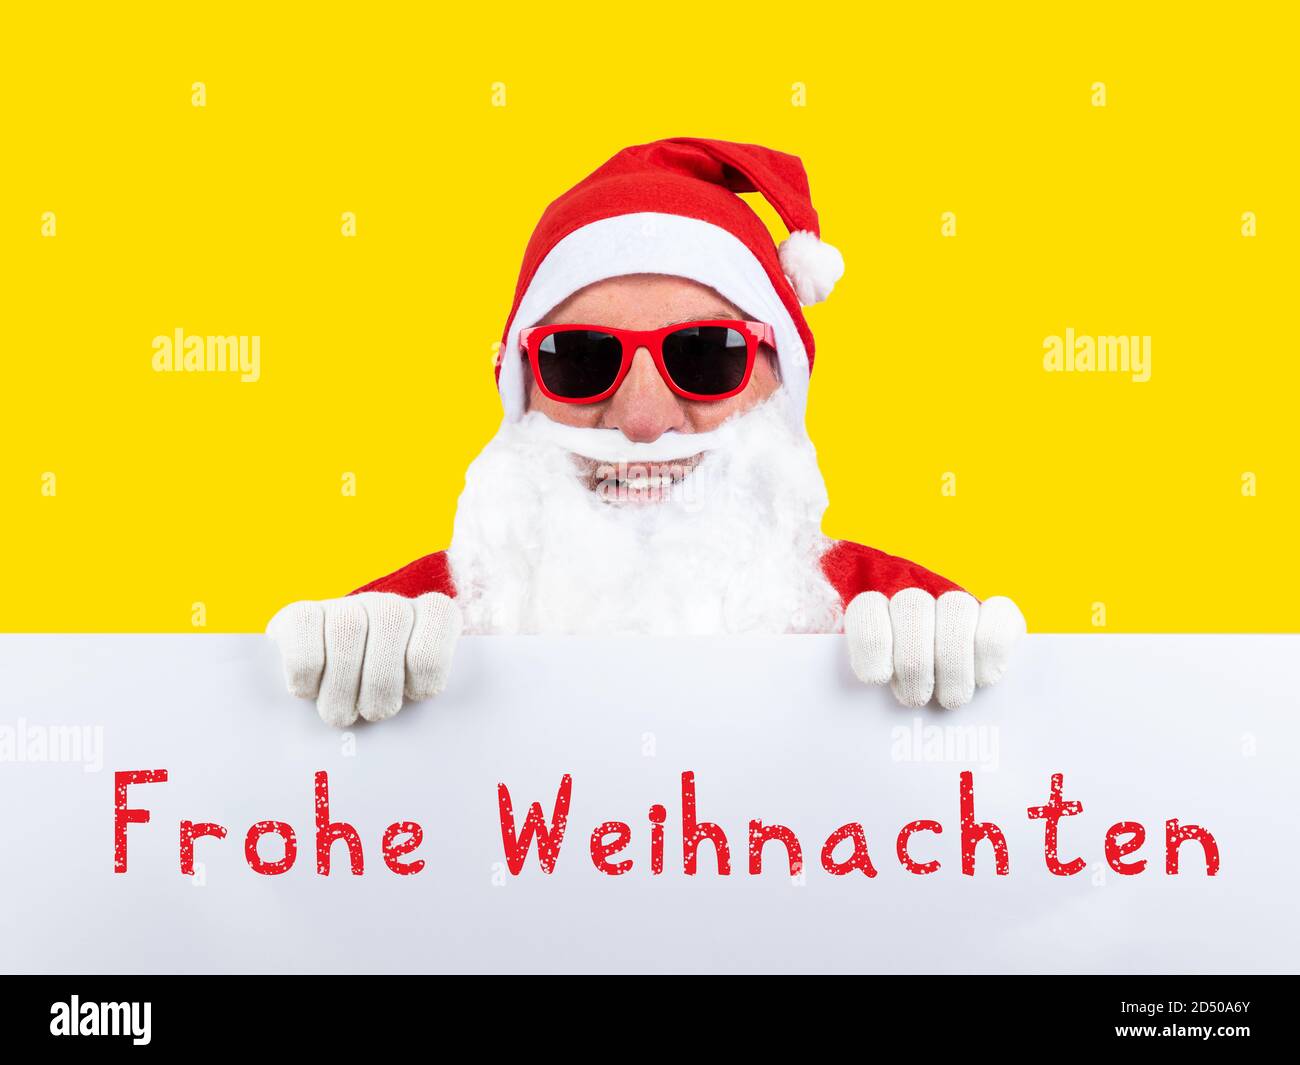 Comment Dit On Père Noël En Anglais Le Père Noël avec des lunettes de soleil et du texte allemand de  weihnachten, en anglais joyeux noël Photo Stock - Alamy